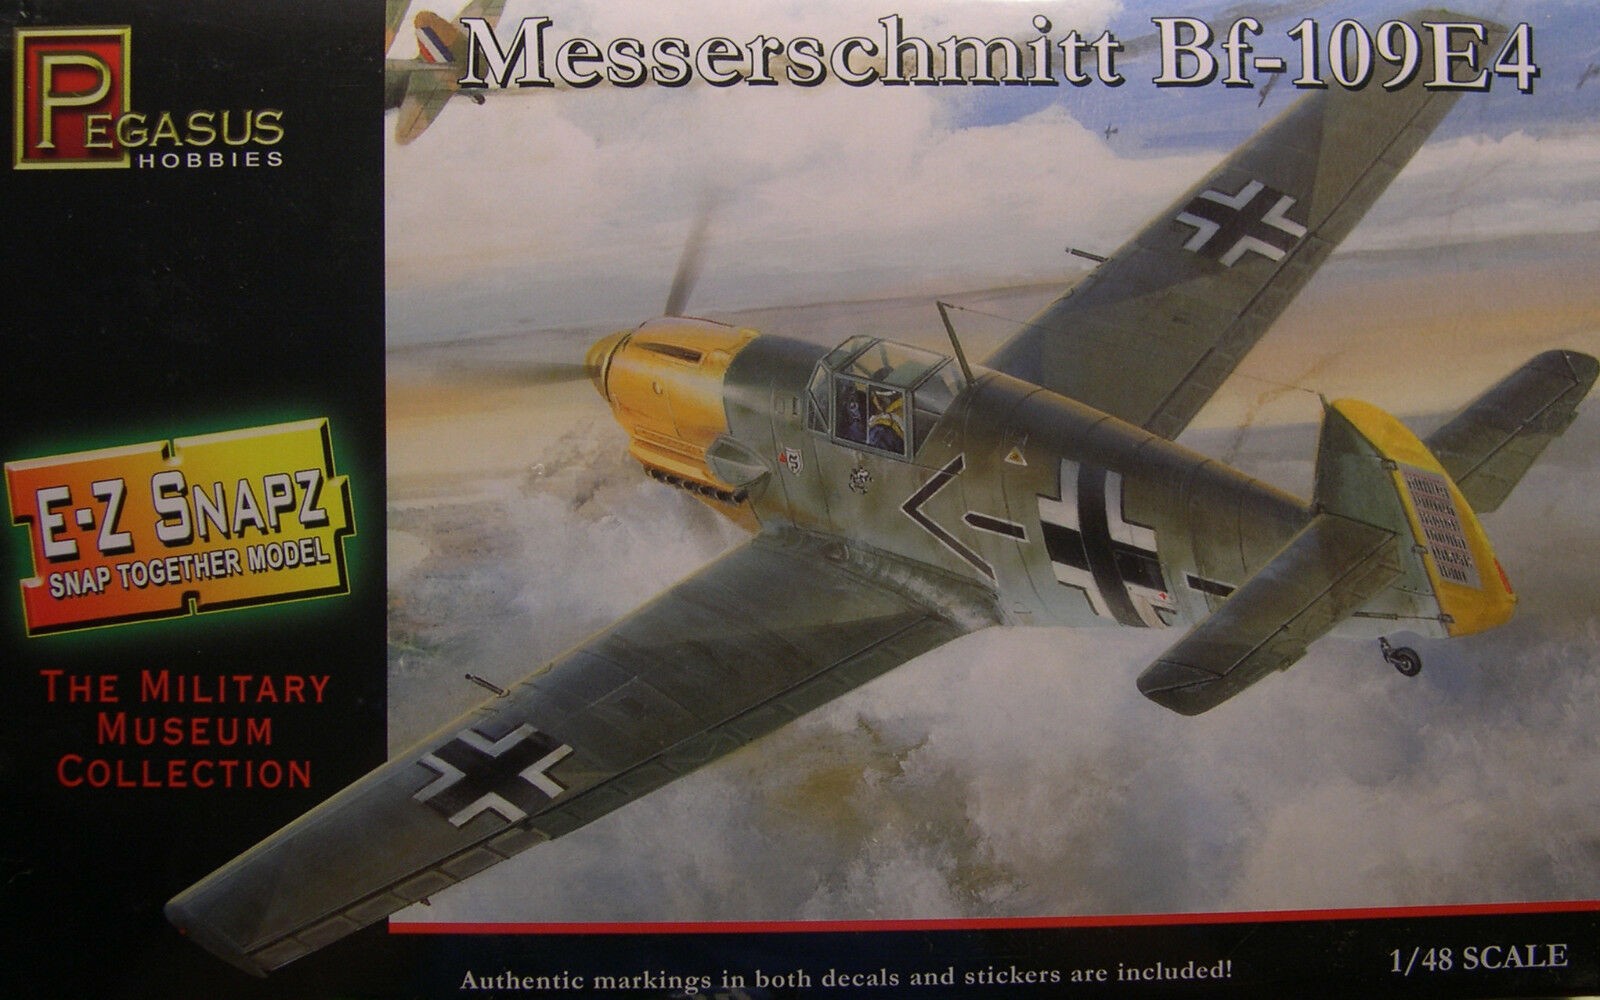 Pegasus 8412 Messerschmitt Bf-109 E4 1:48 " SNAP "